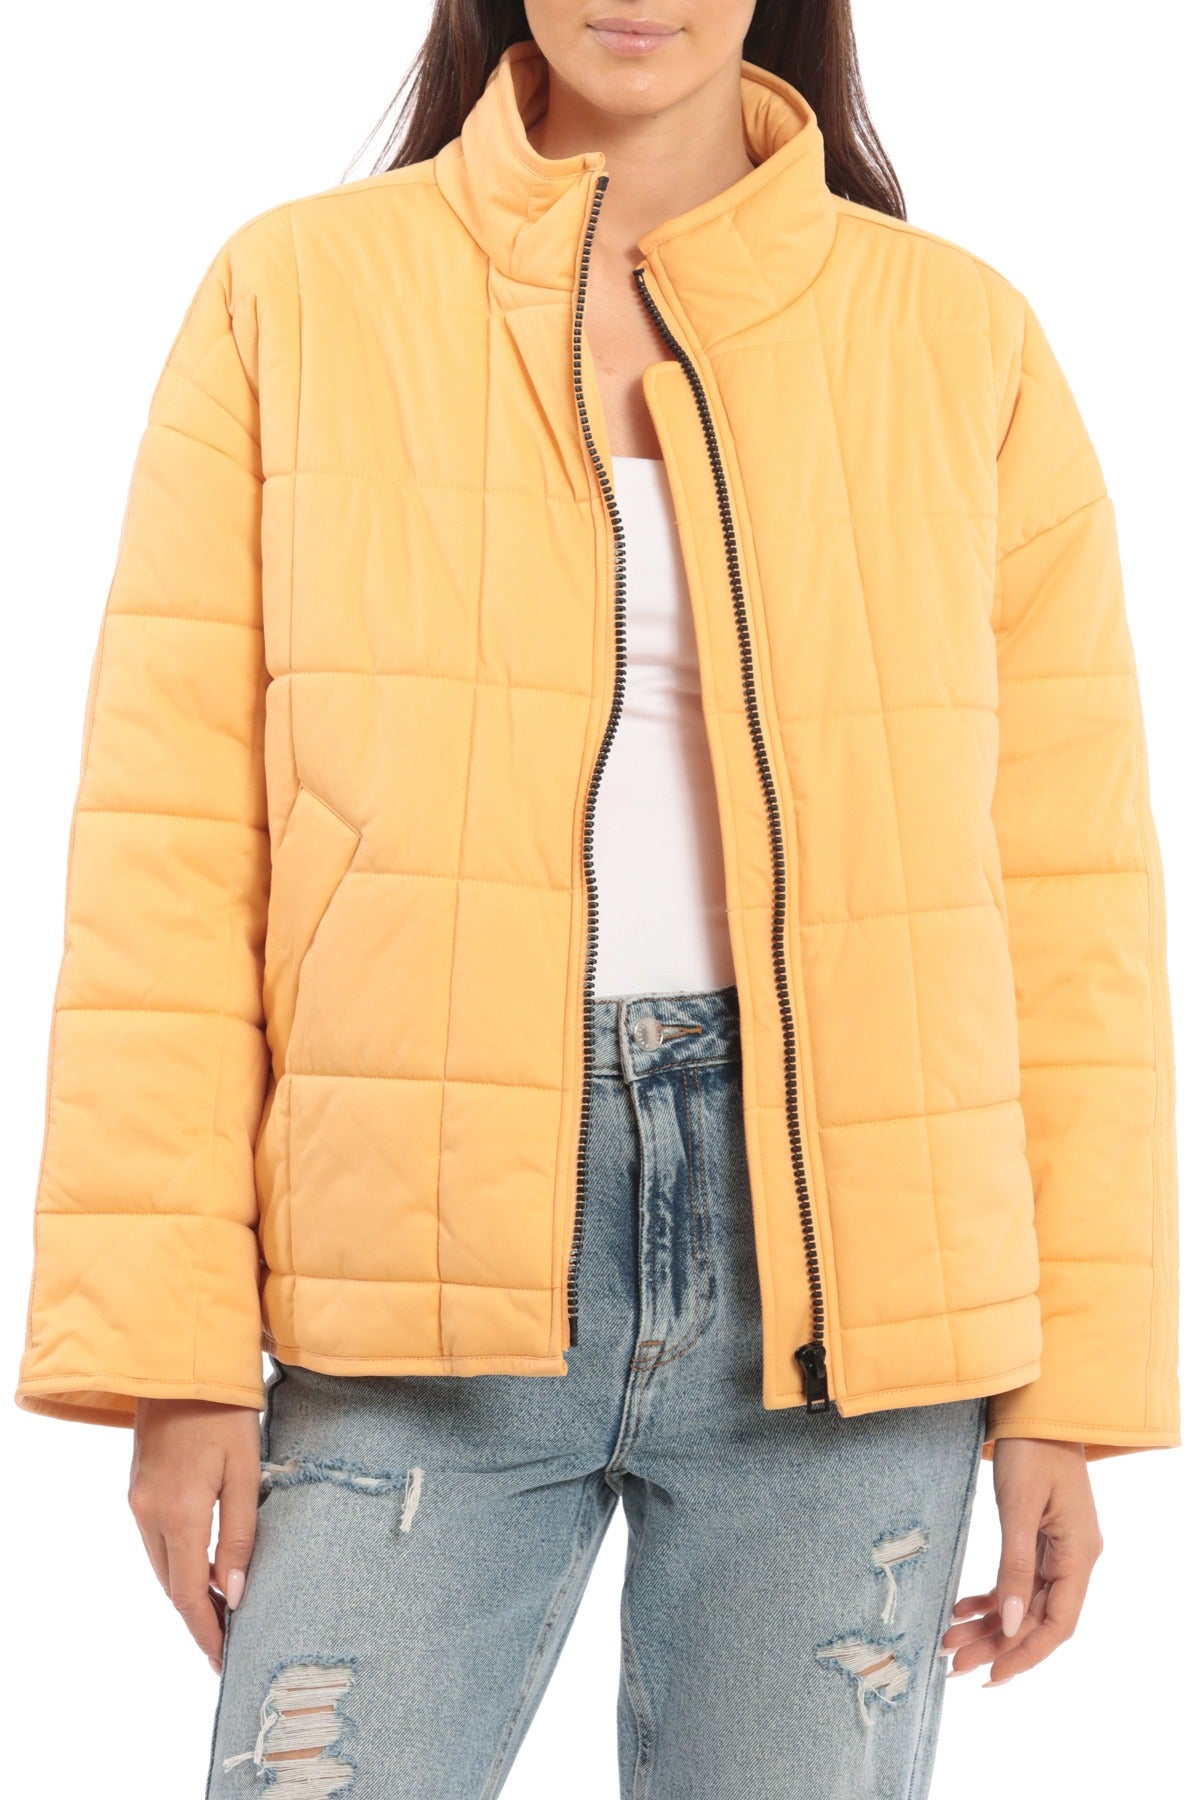 Quilt Zip Up Jacket Coats & Jackets Avec Les Filles L Orangesicle 